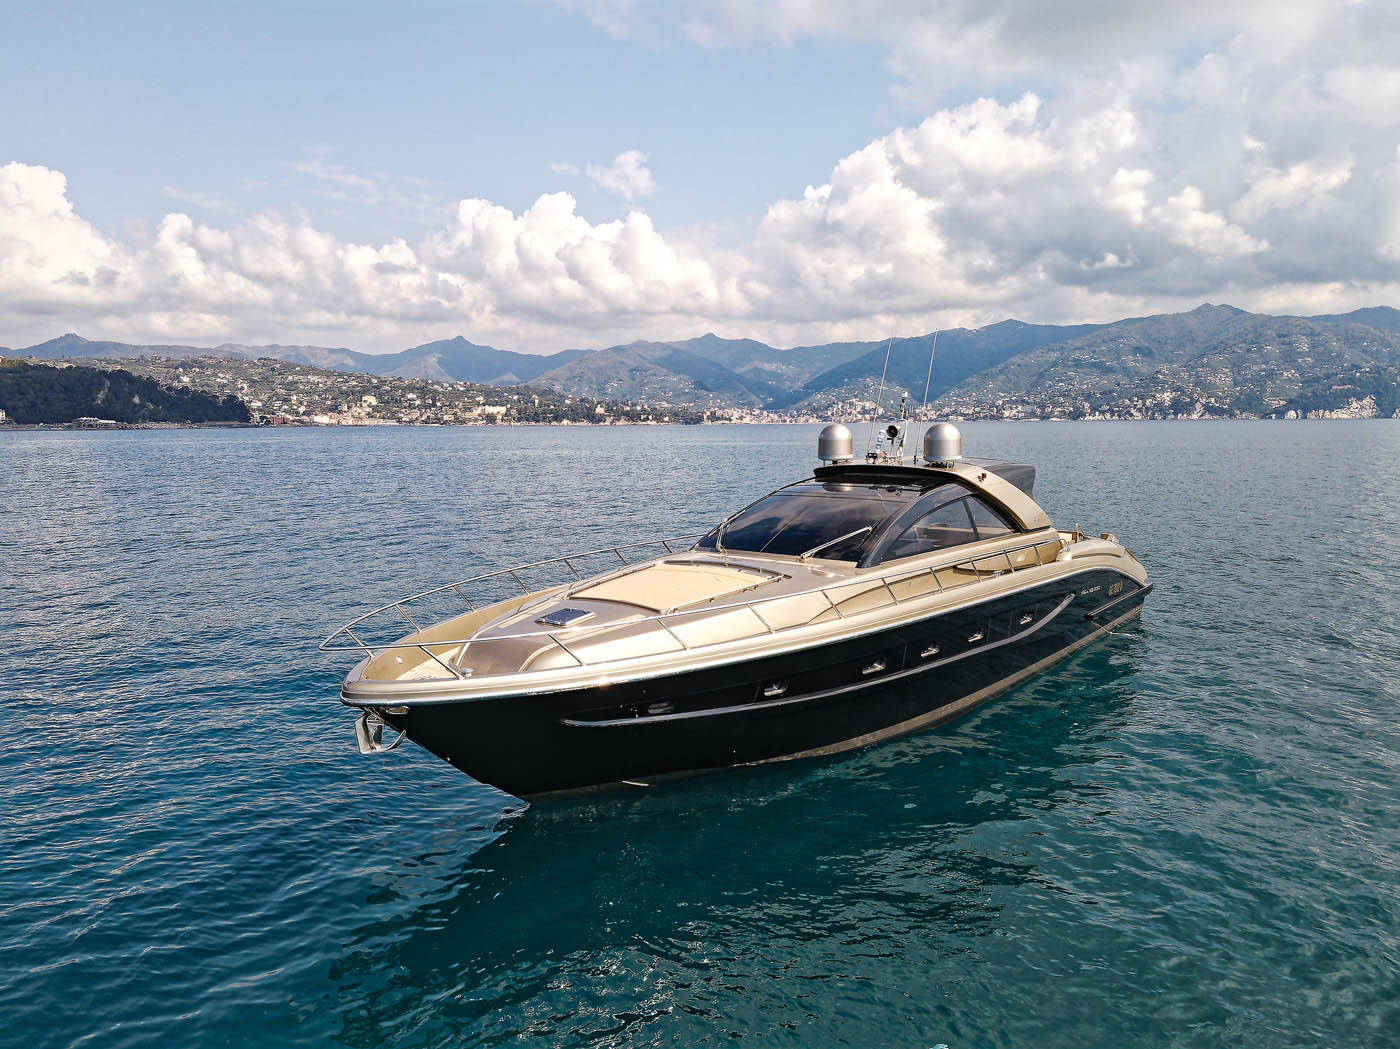 Mega yacht Charter Naples, Italy